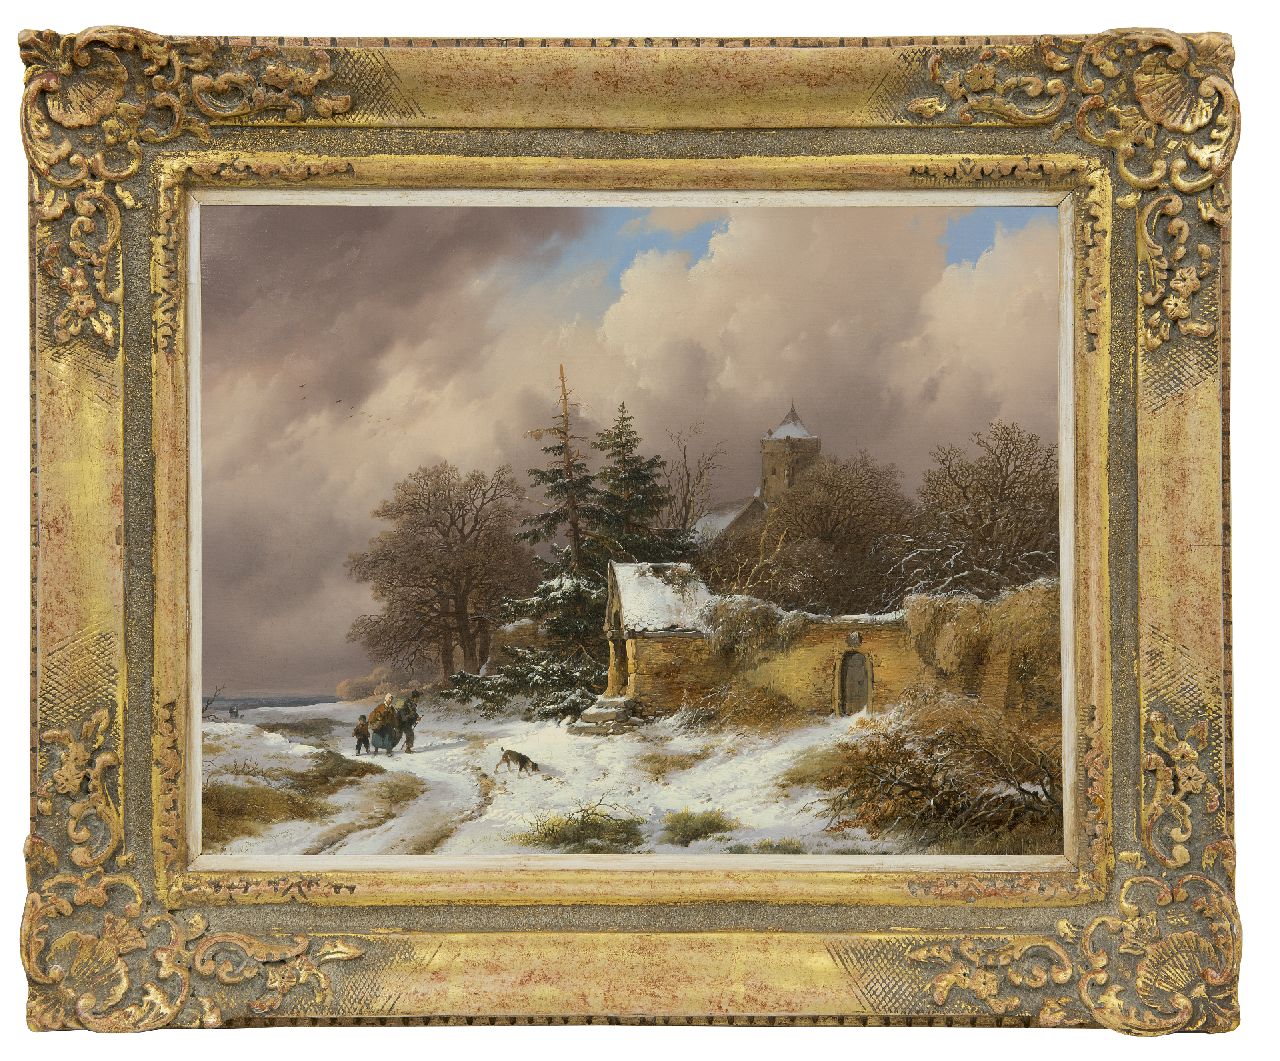 Haanen R.A.  | Remigius Adrianus Haanen | Schilderijen te koop aangeboden | Winterlandschap met landvolk op een pad, olieverf op doek 36,3 x 49,3 cm, gesigneerd linksonder en gedateerd 1849